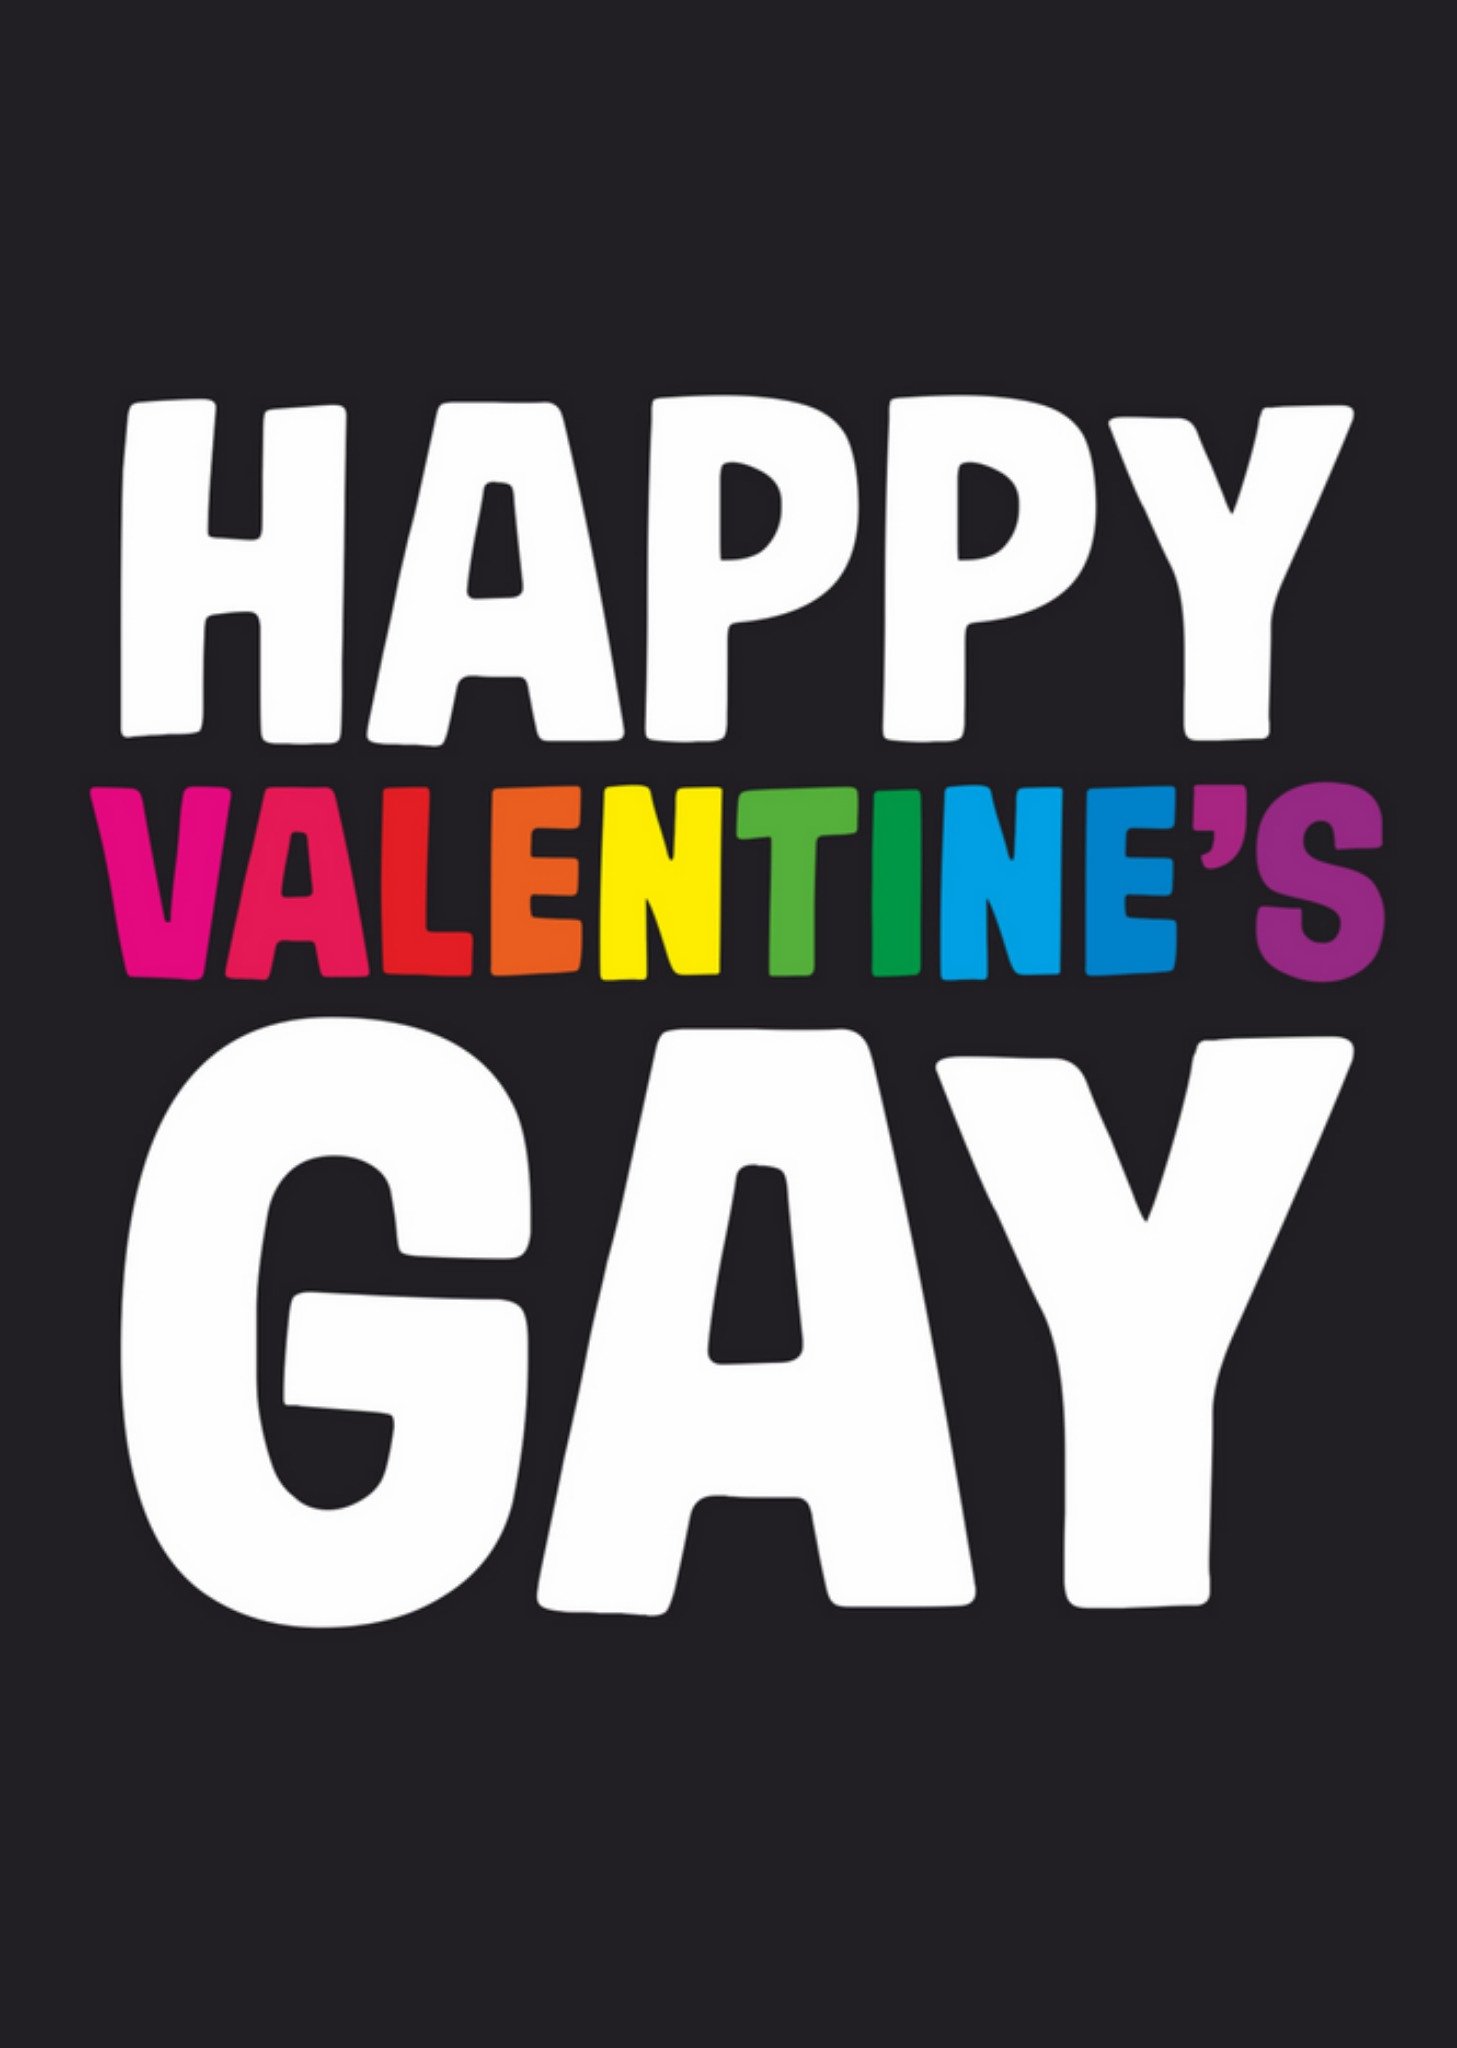 Dean Morris - Valentijnskaart - gay